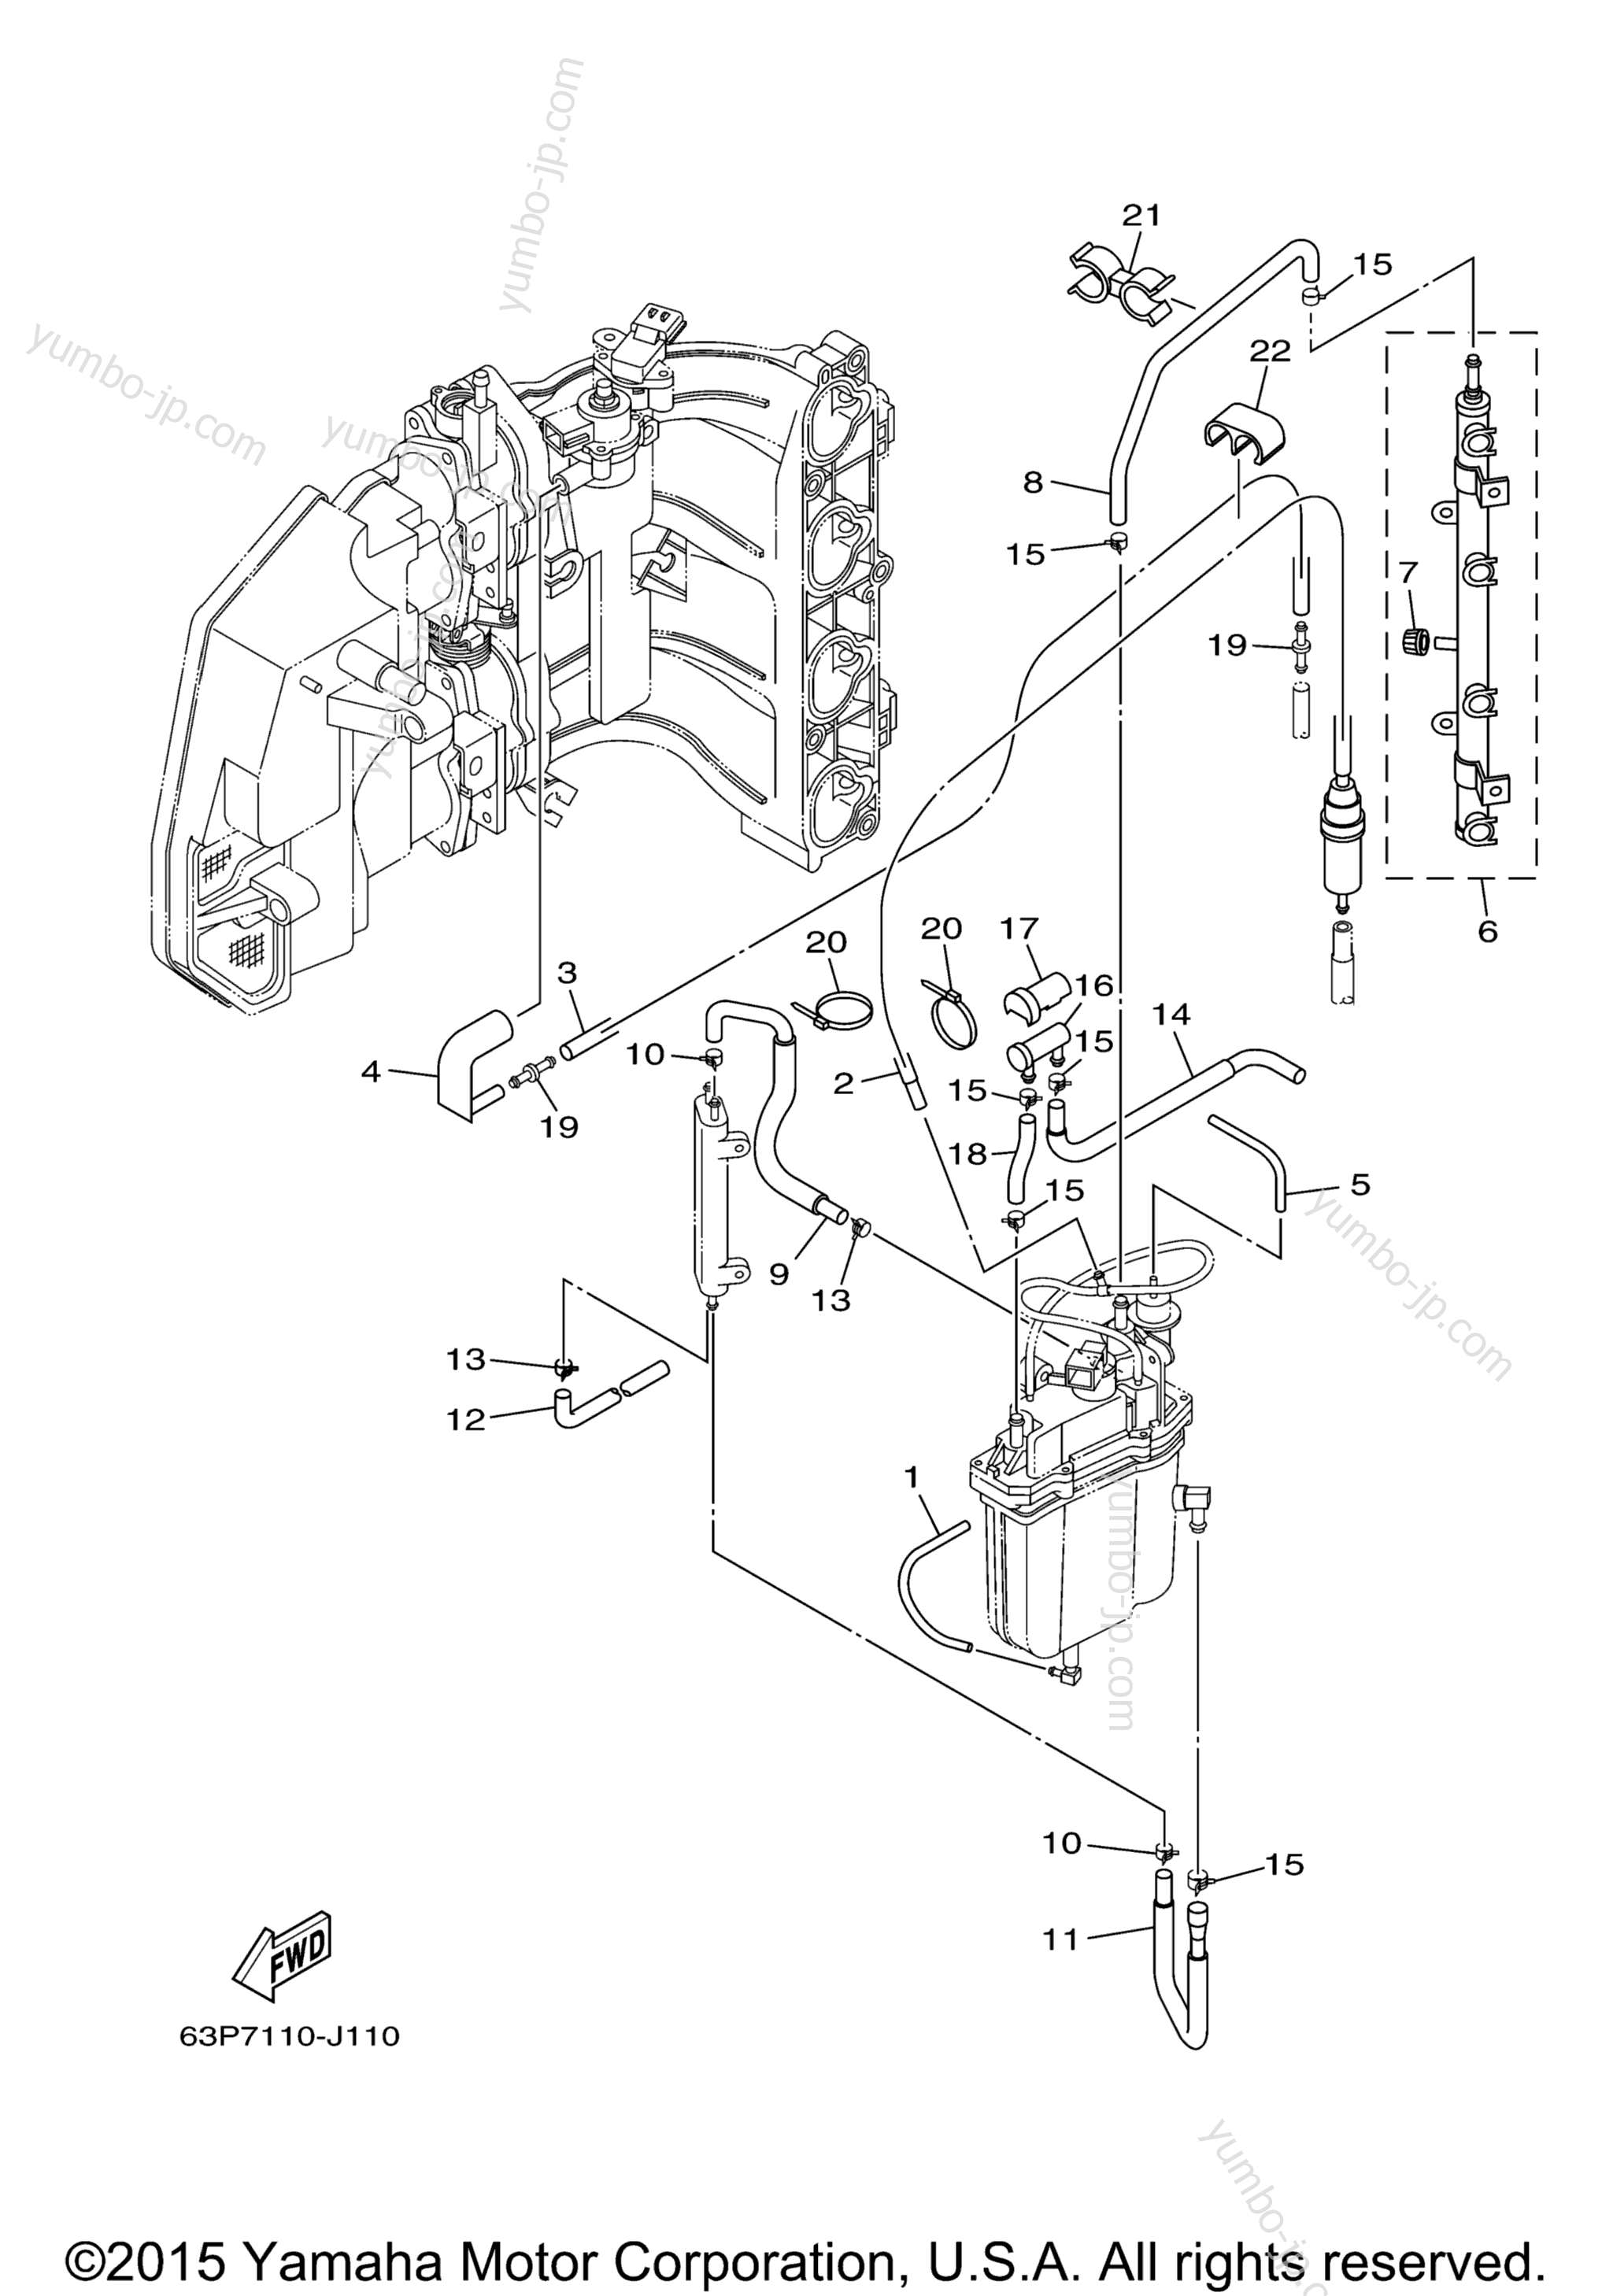 Fuel Injection Pump 2 для лодочных моторов YAMAHA F150TLR_04 (0411) 2006 г.